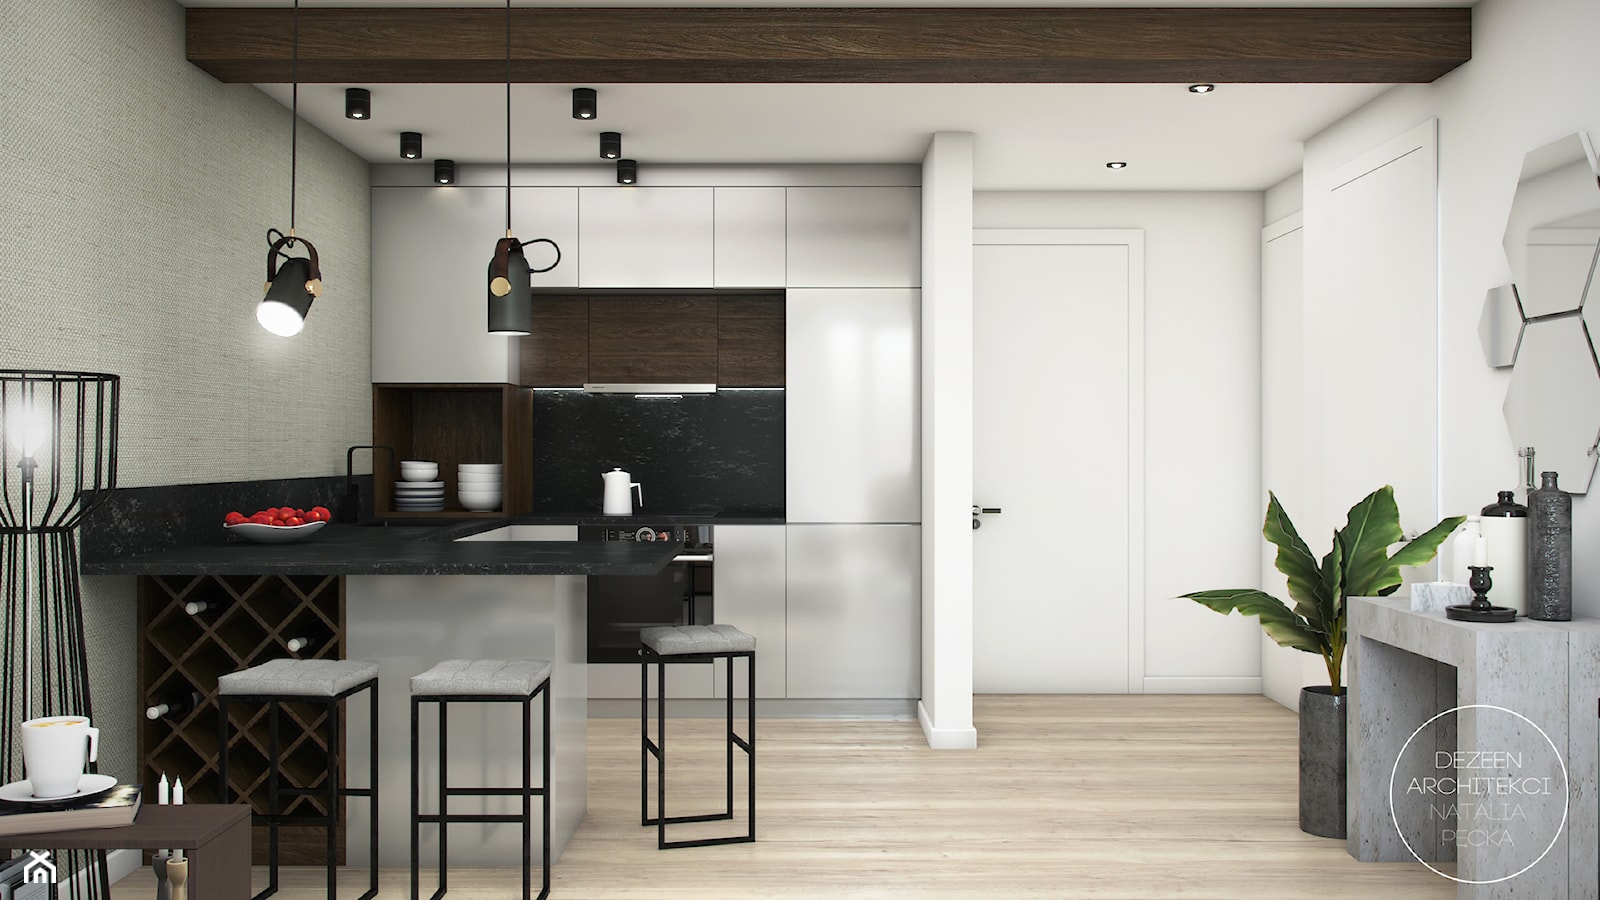 Mieszkanie Black&White - Średnia szara jadalnia w kuchni, styl nowoczesny - zdjęcie od DEZEEN ARCHITEKCI Natalia Pęcka - Homebook